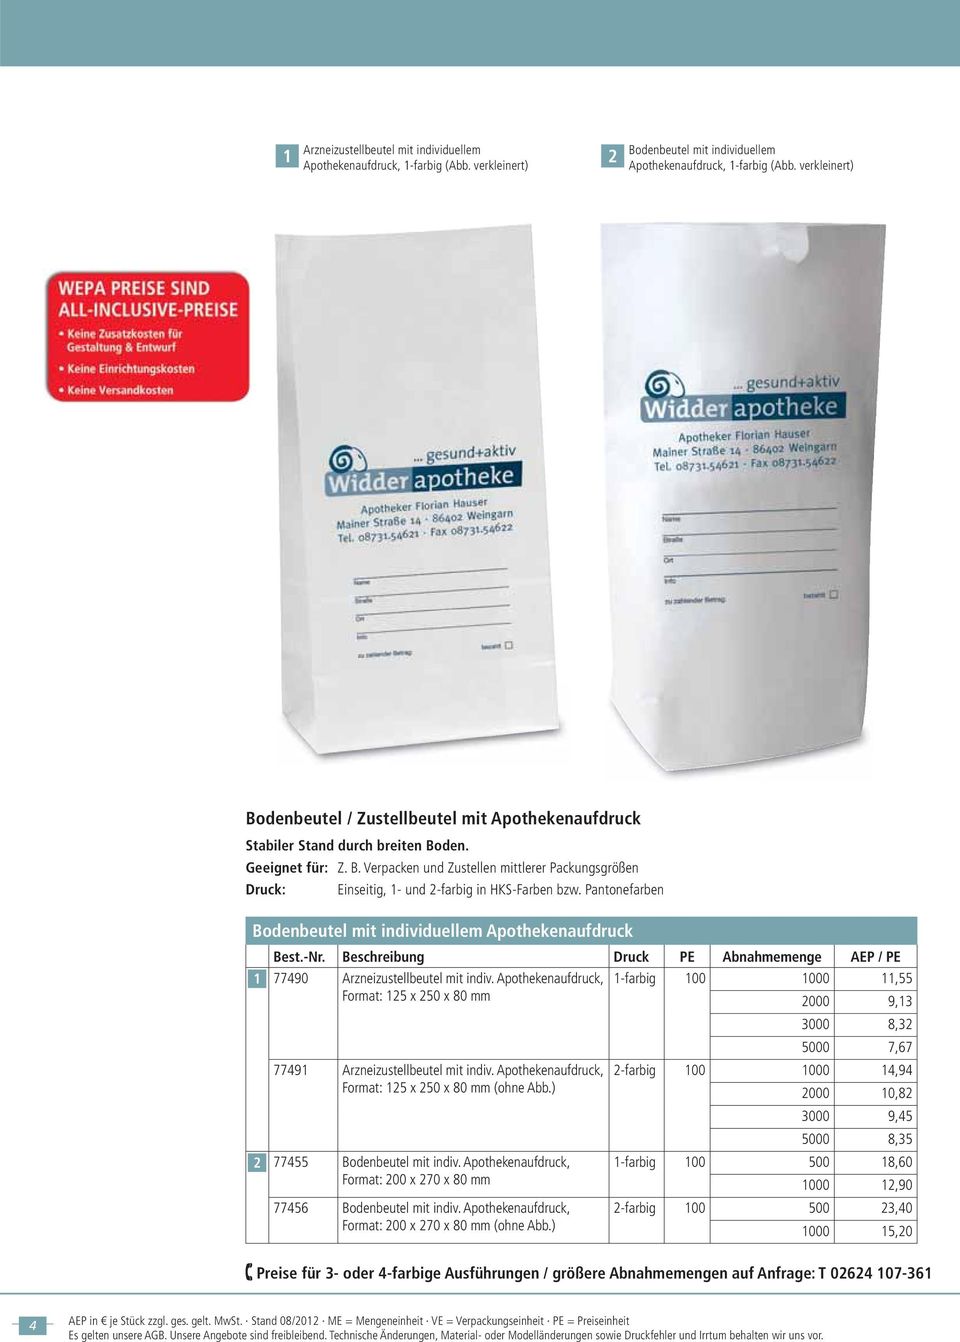 Pantonefarben Bodenbeutel mit individuellem Apothekenaufdruck 77490 Arzneizustellbeutel mit indiv.